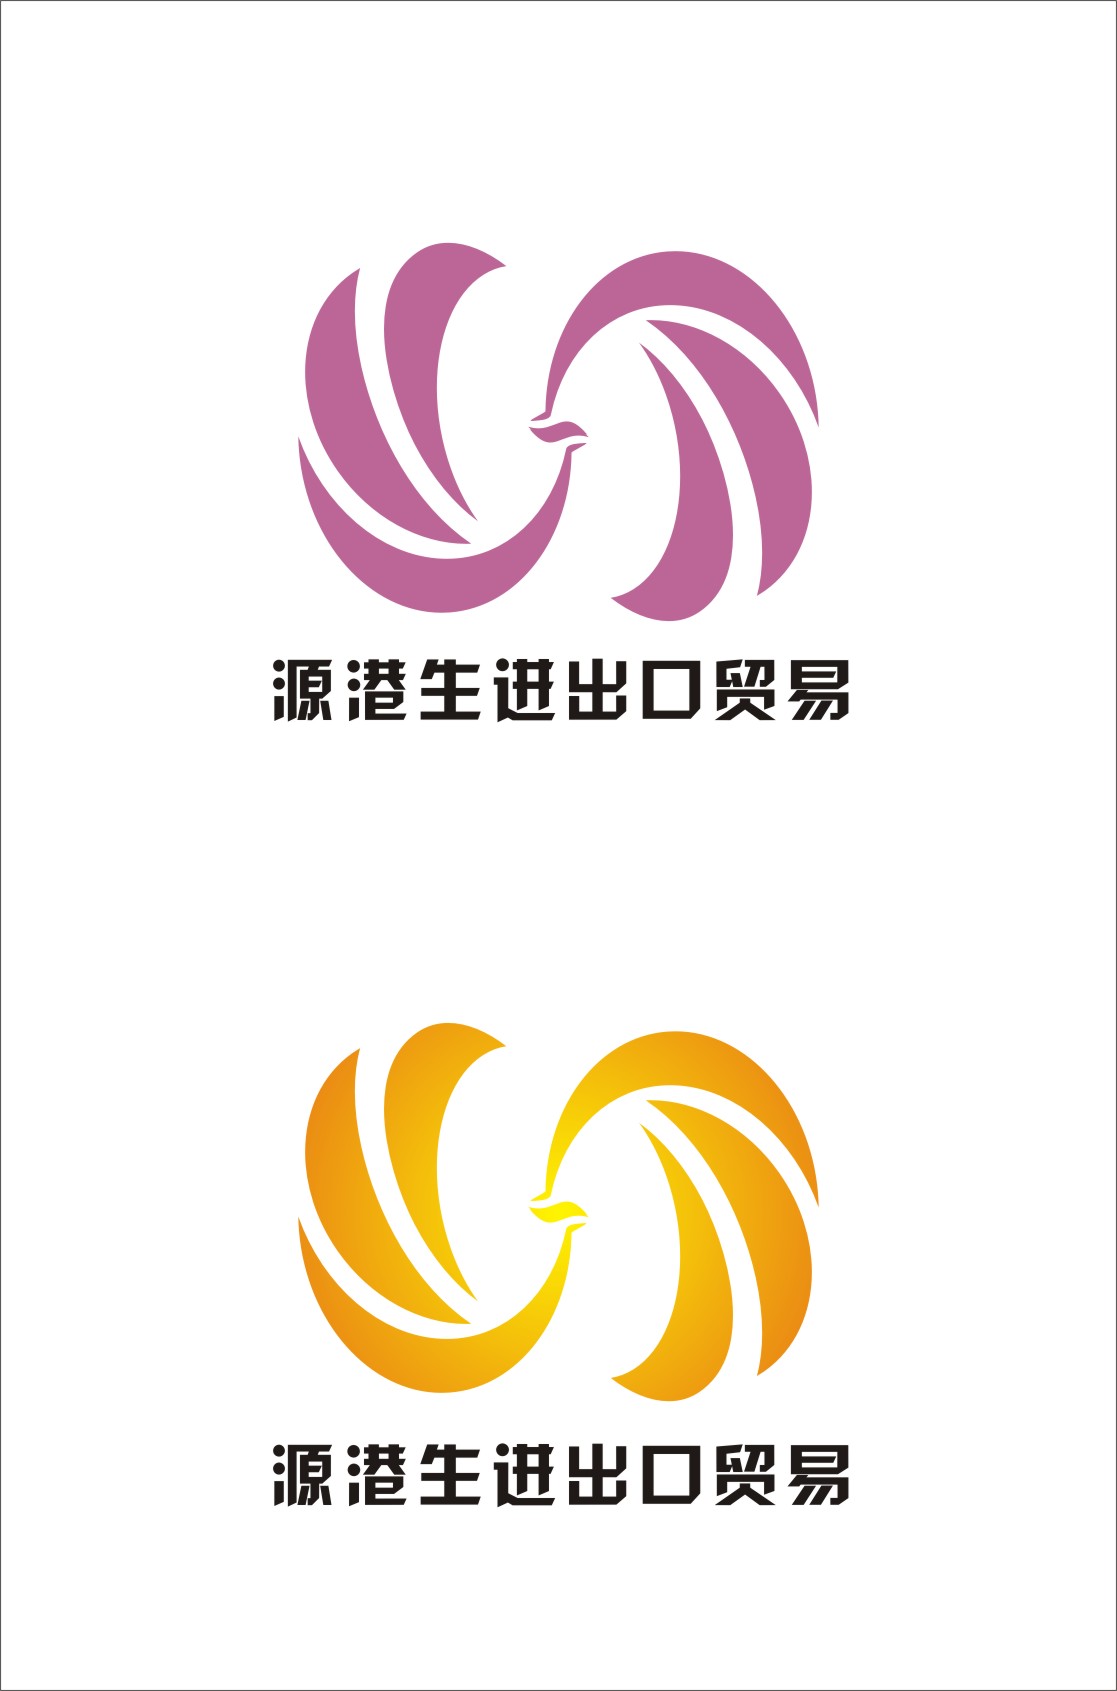 南京源港生进出口贸易公司 logo设计